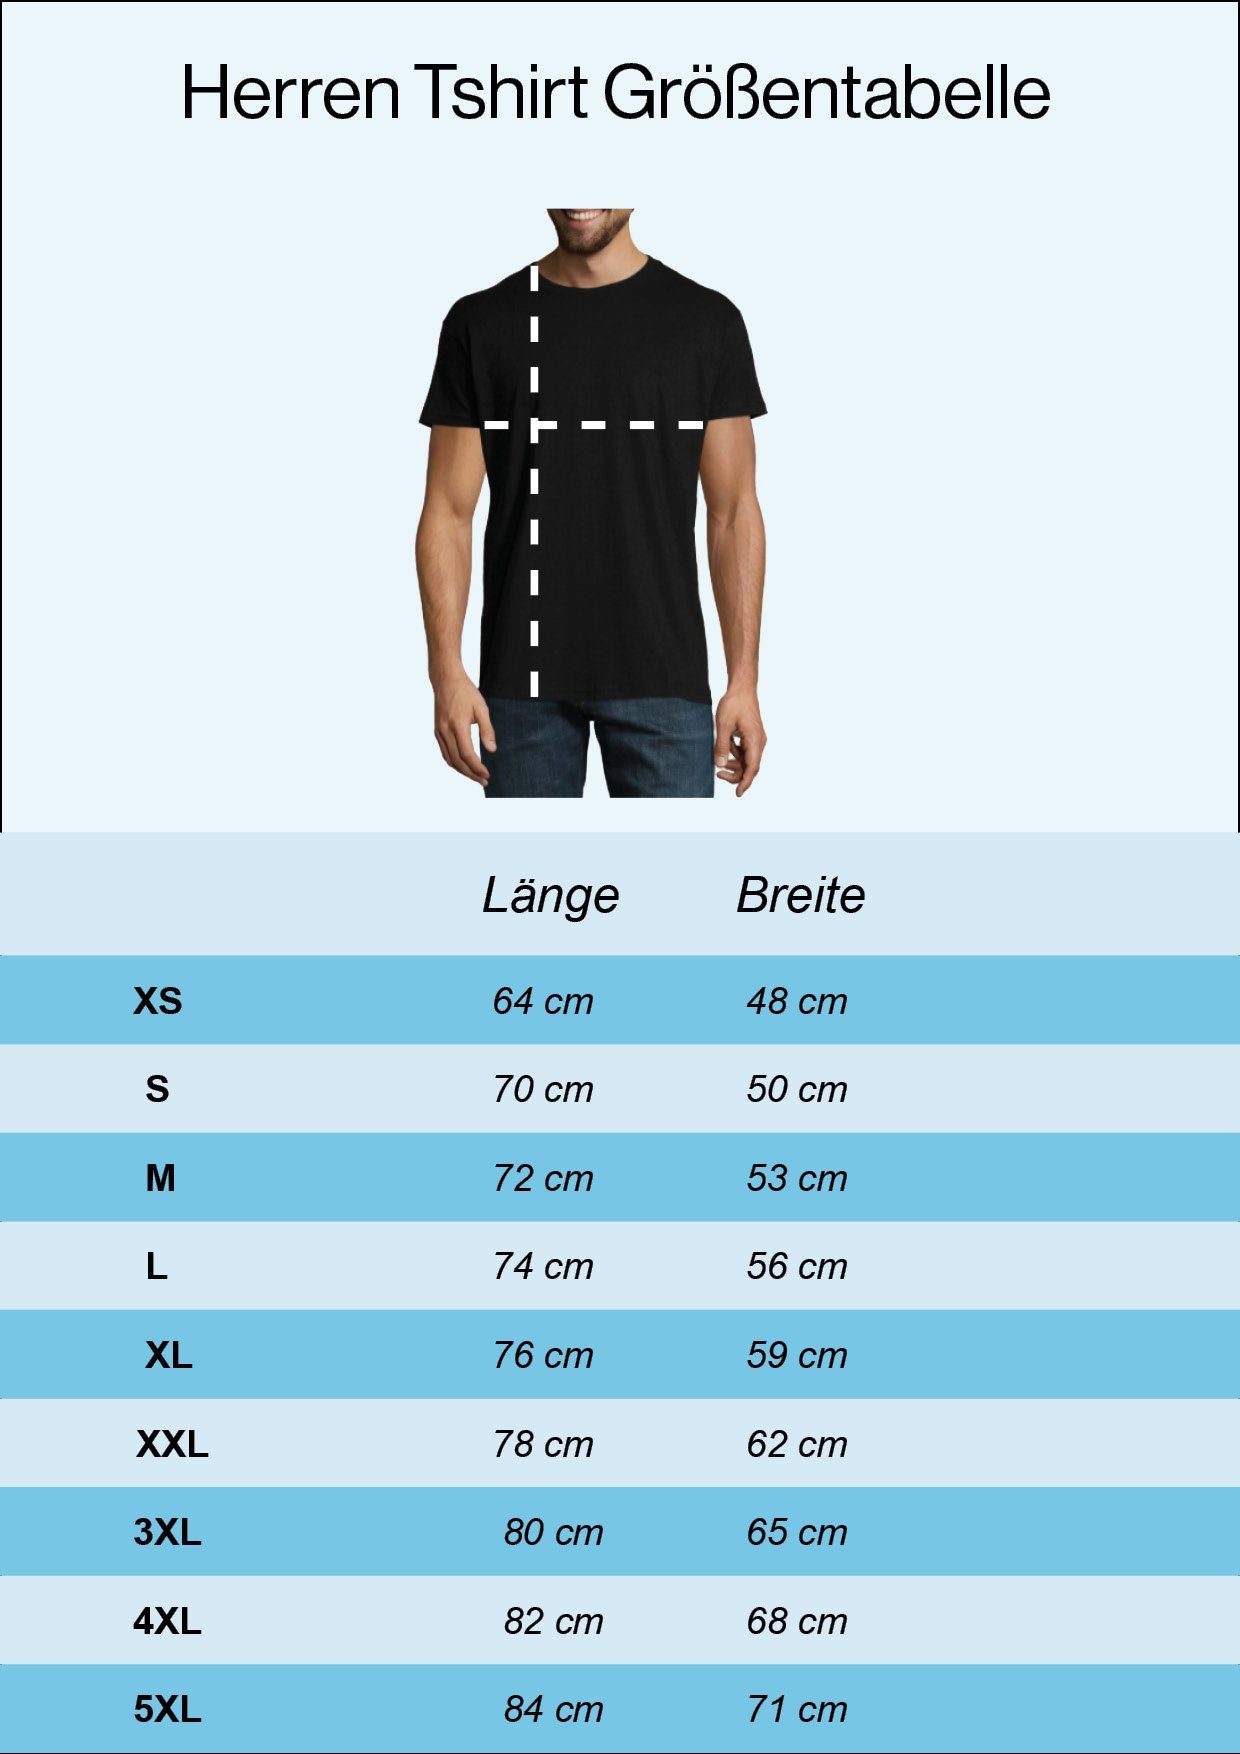 Wäsch" mit Shirt Navyblau Youth In Läderhose Designz Frontprint lustigem Herren Der "Mei T-Shirt